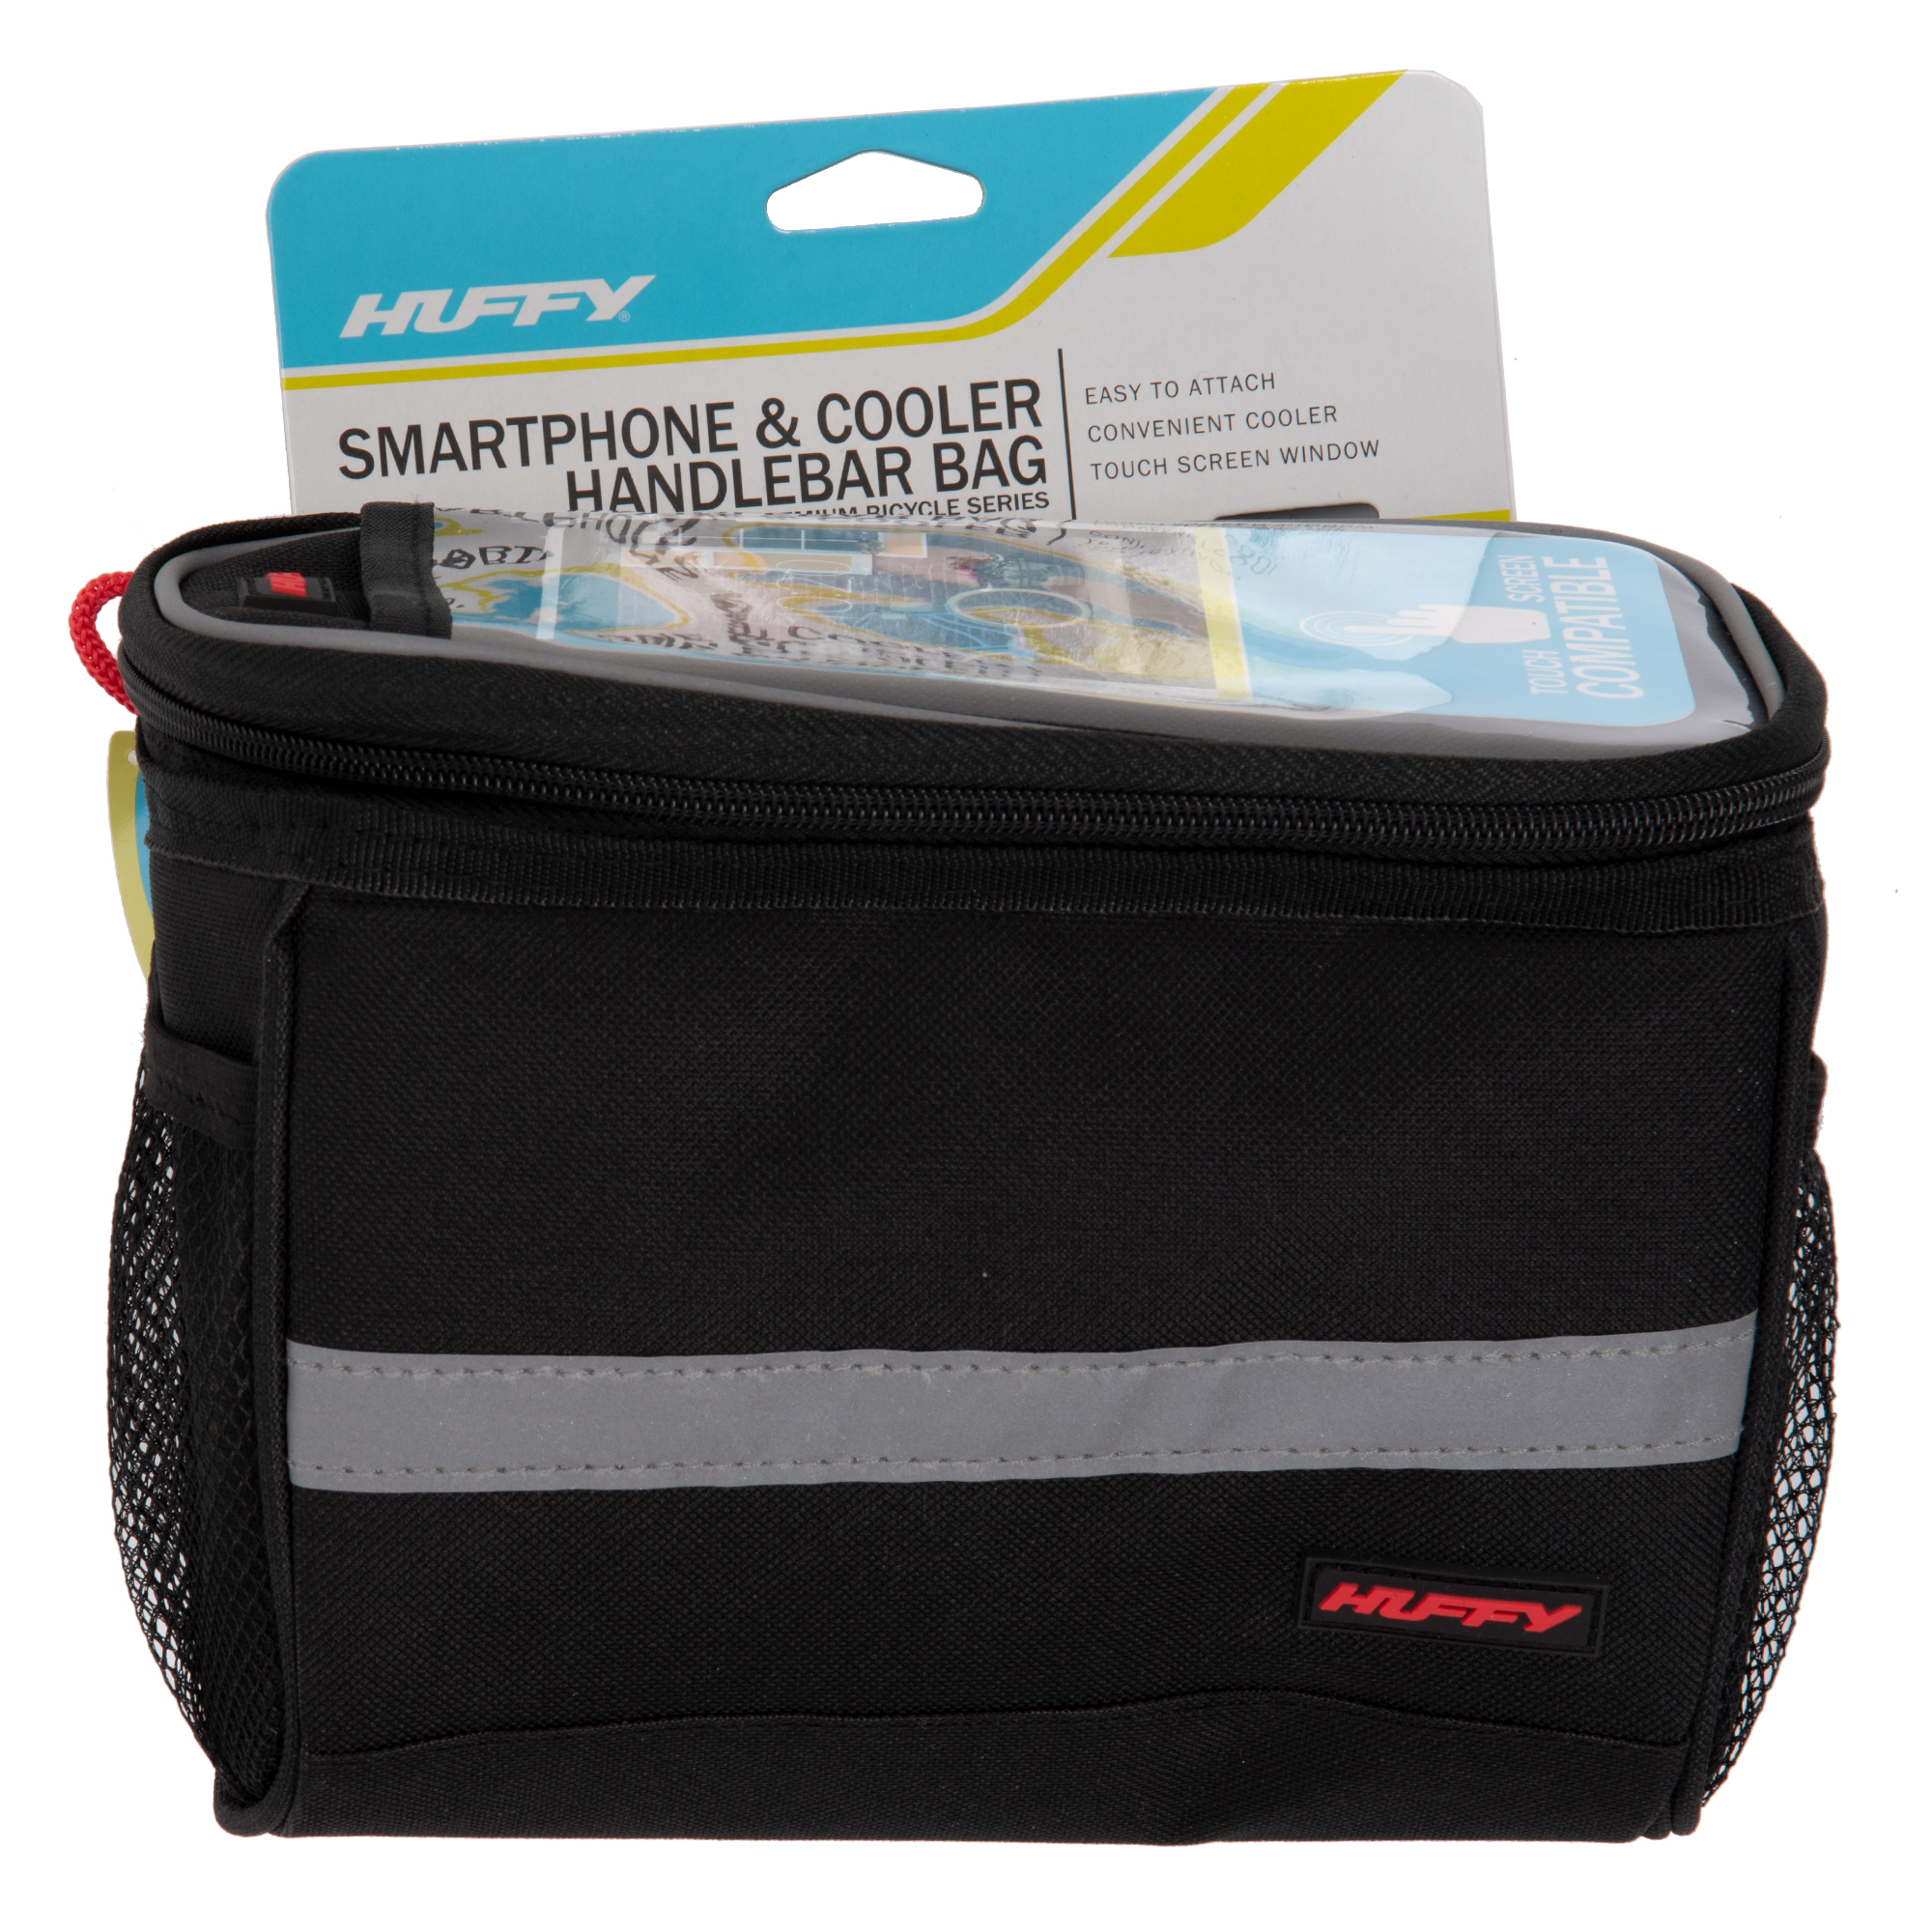 Huffy Handlebar Cooler Bag with Smartphone Pocket, Black - image 1 of 5